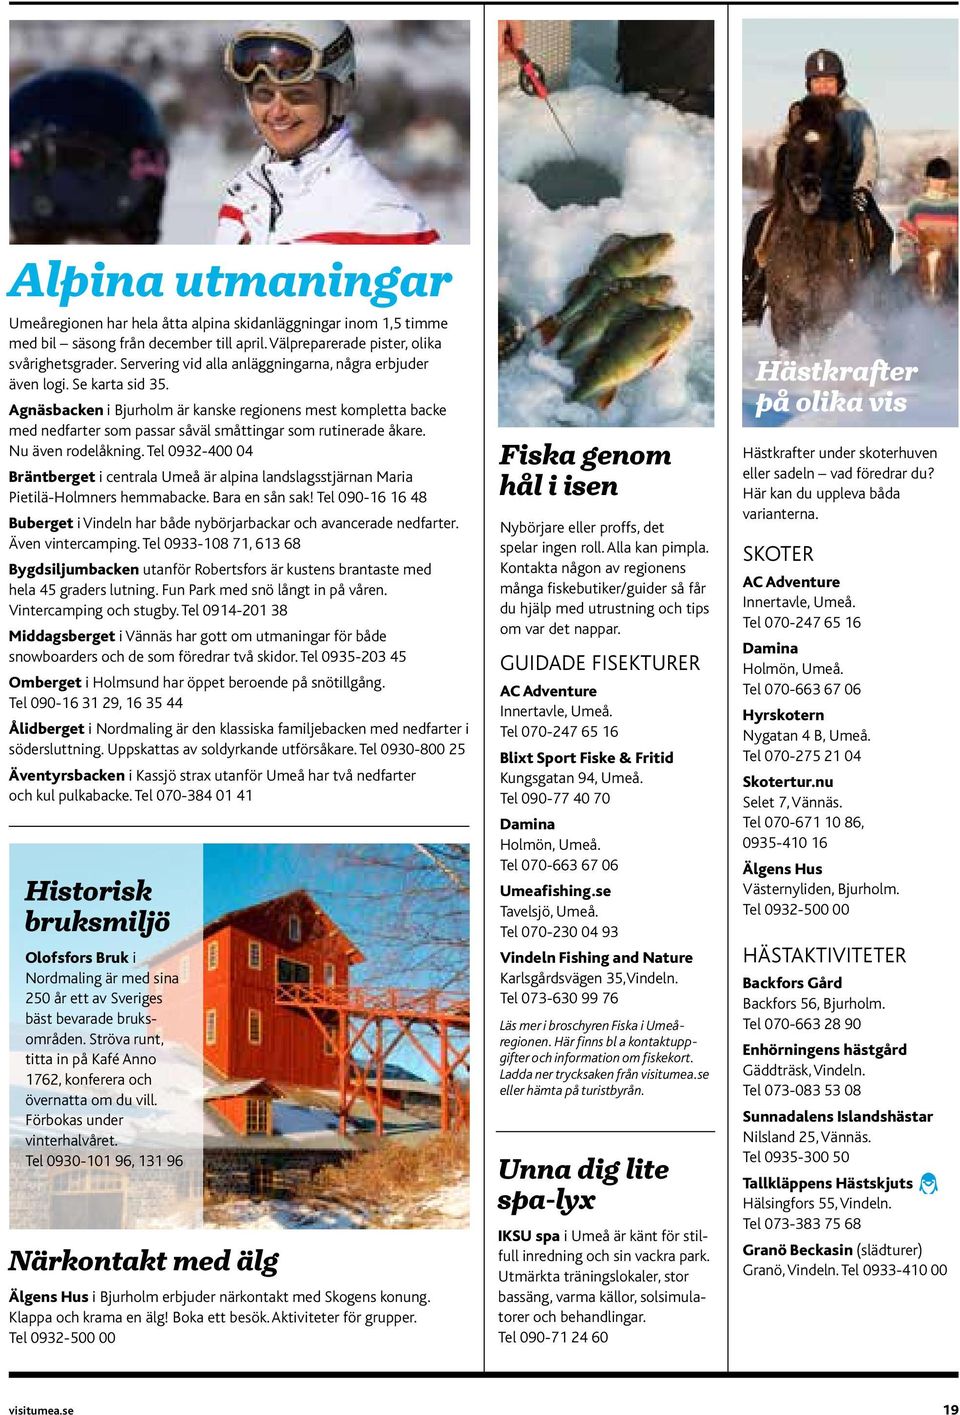 Tel 0932-400 04 Brätberet i cetrala Umeå är alpia ladslasstjära Maria Pietilä-Holmers hemmabacke. Bara e så sak! Tel 090-16 16 48 Buberet i Videl har både ybörjarbackar och aacerade edfarter.